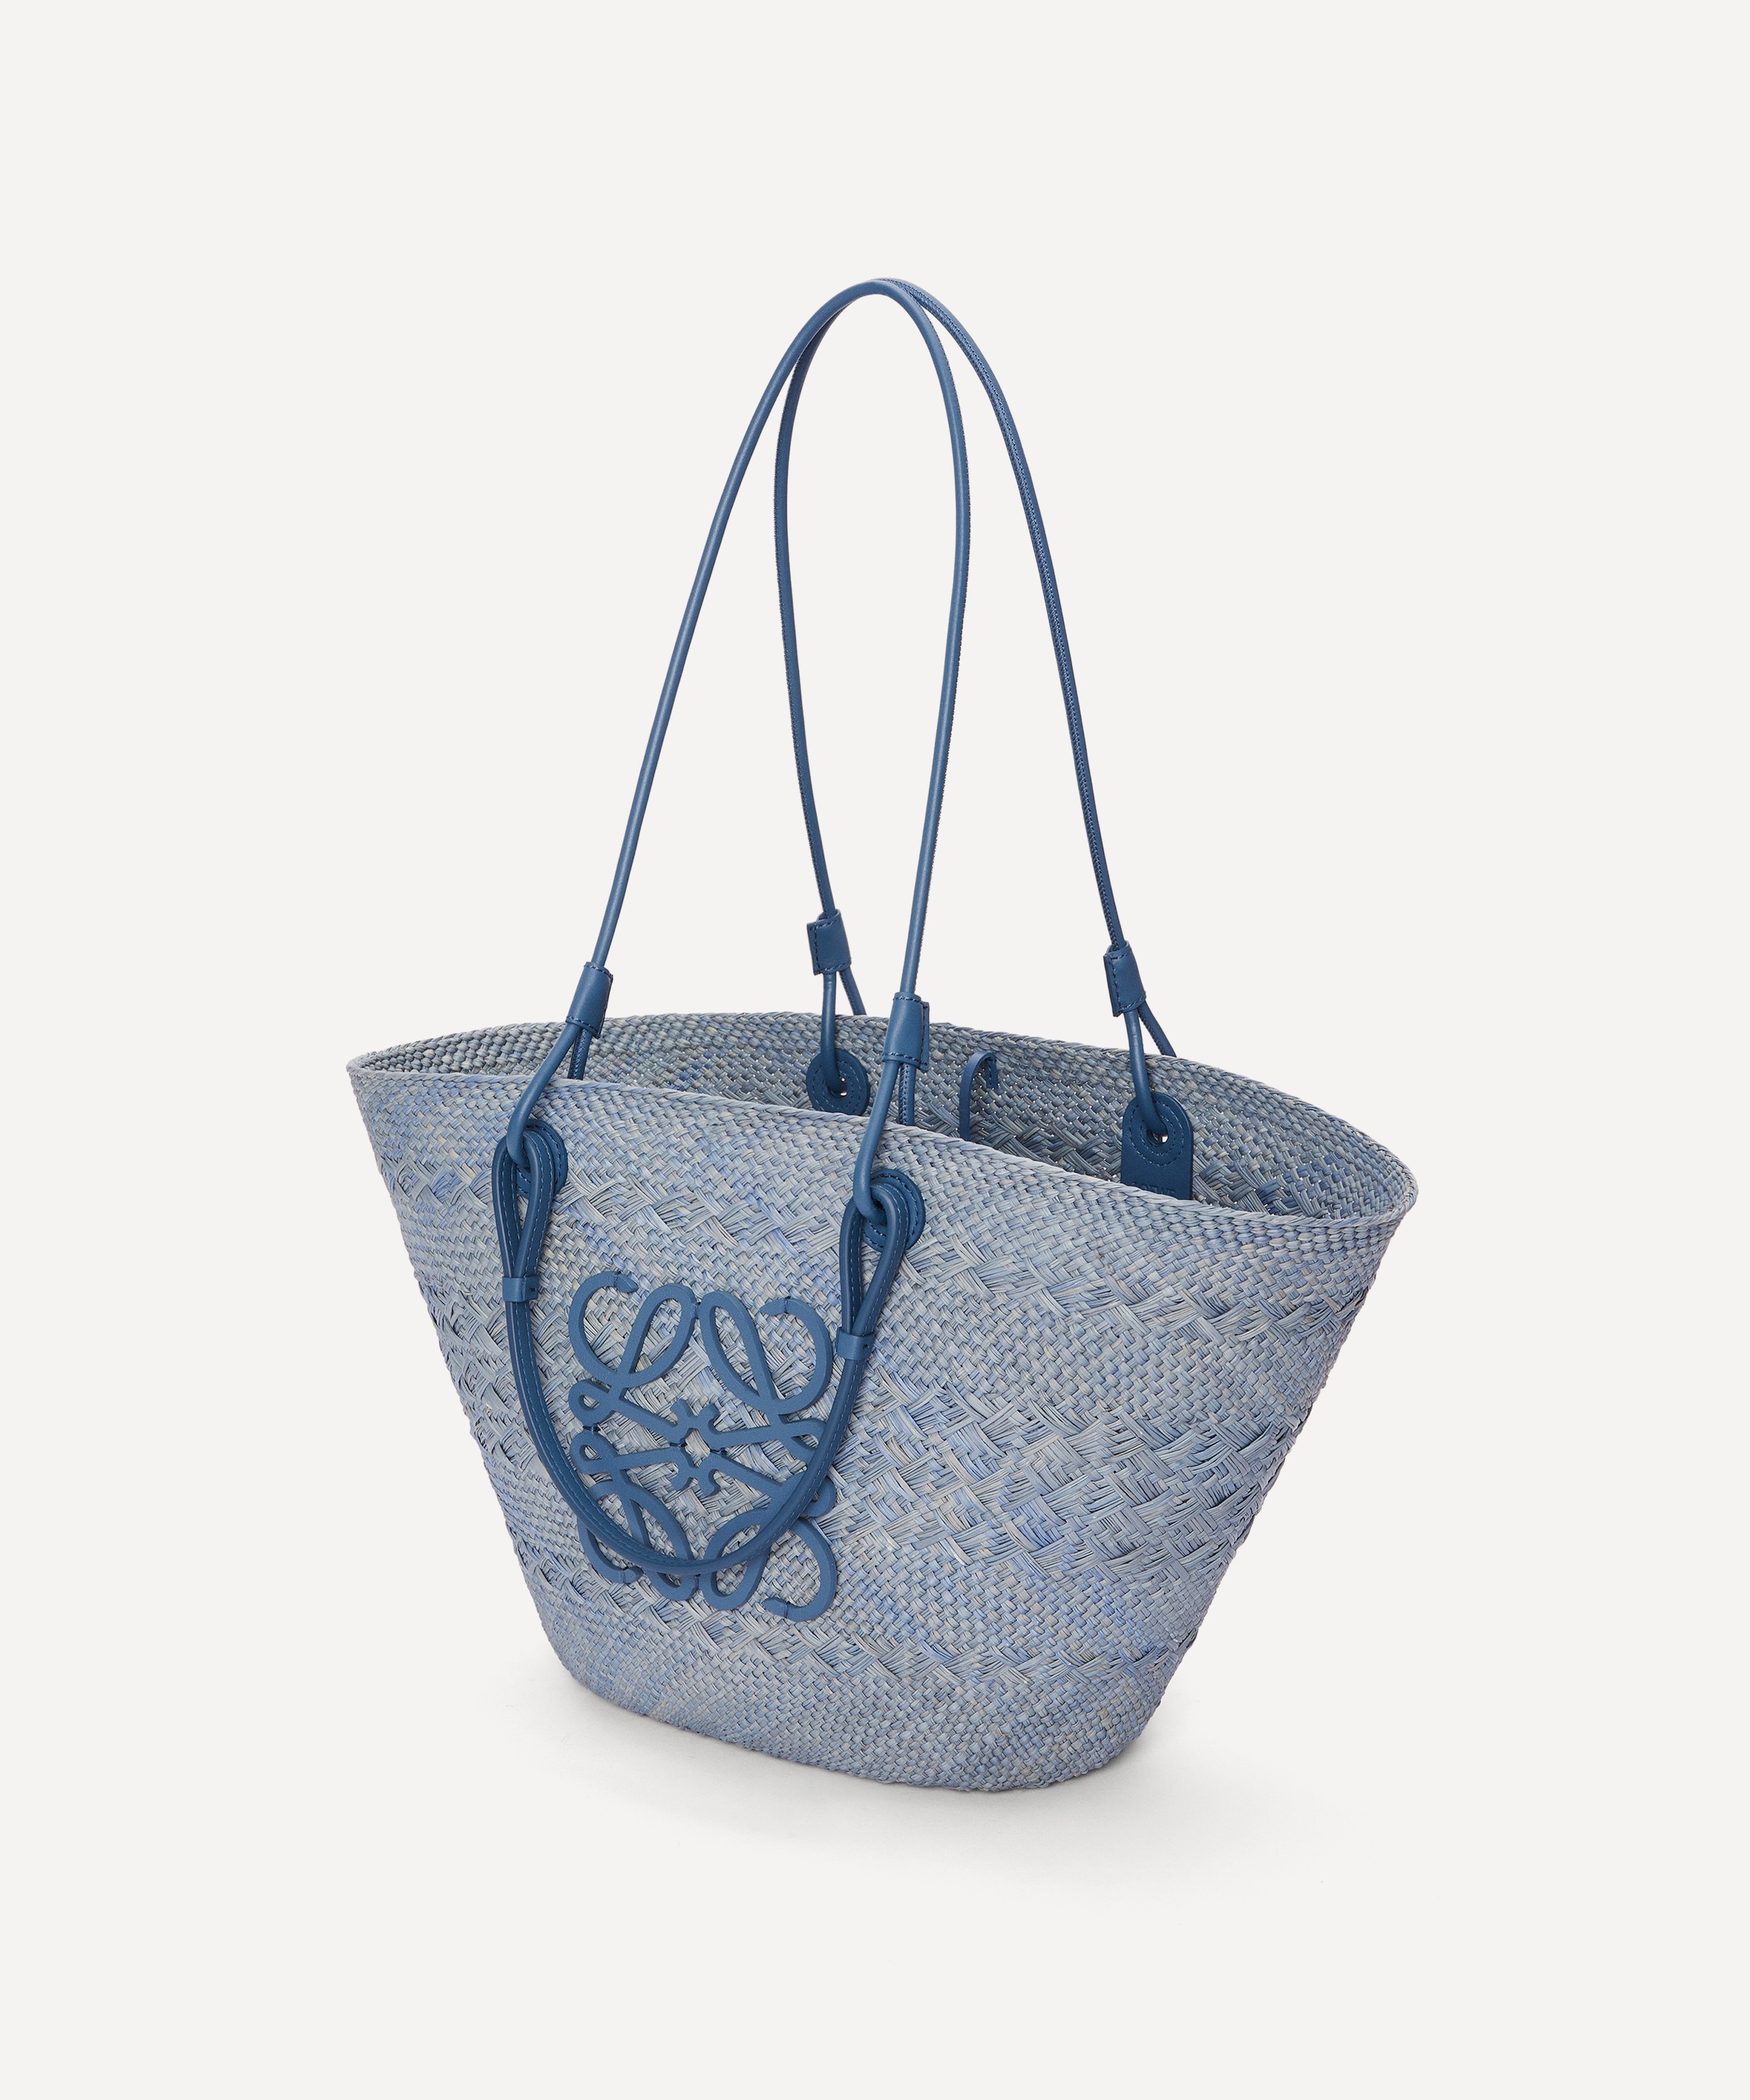 Loewe X Paula's Ibiza Small Palm Leaf Basket Tote Bag in Blue